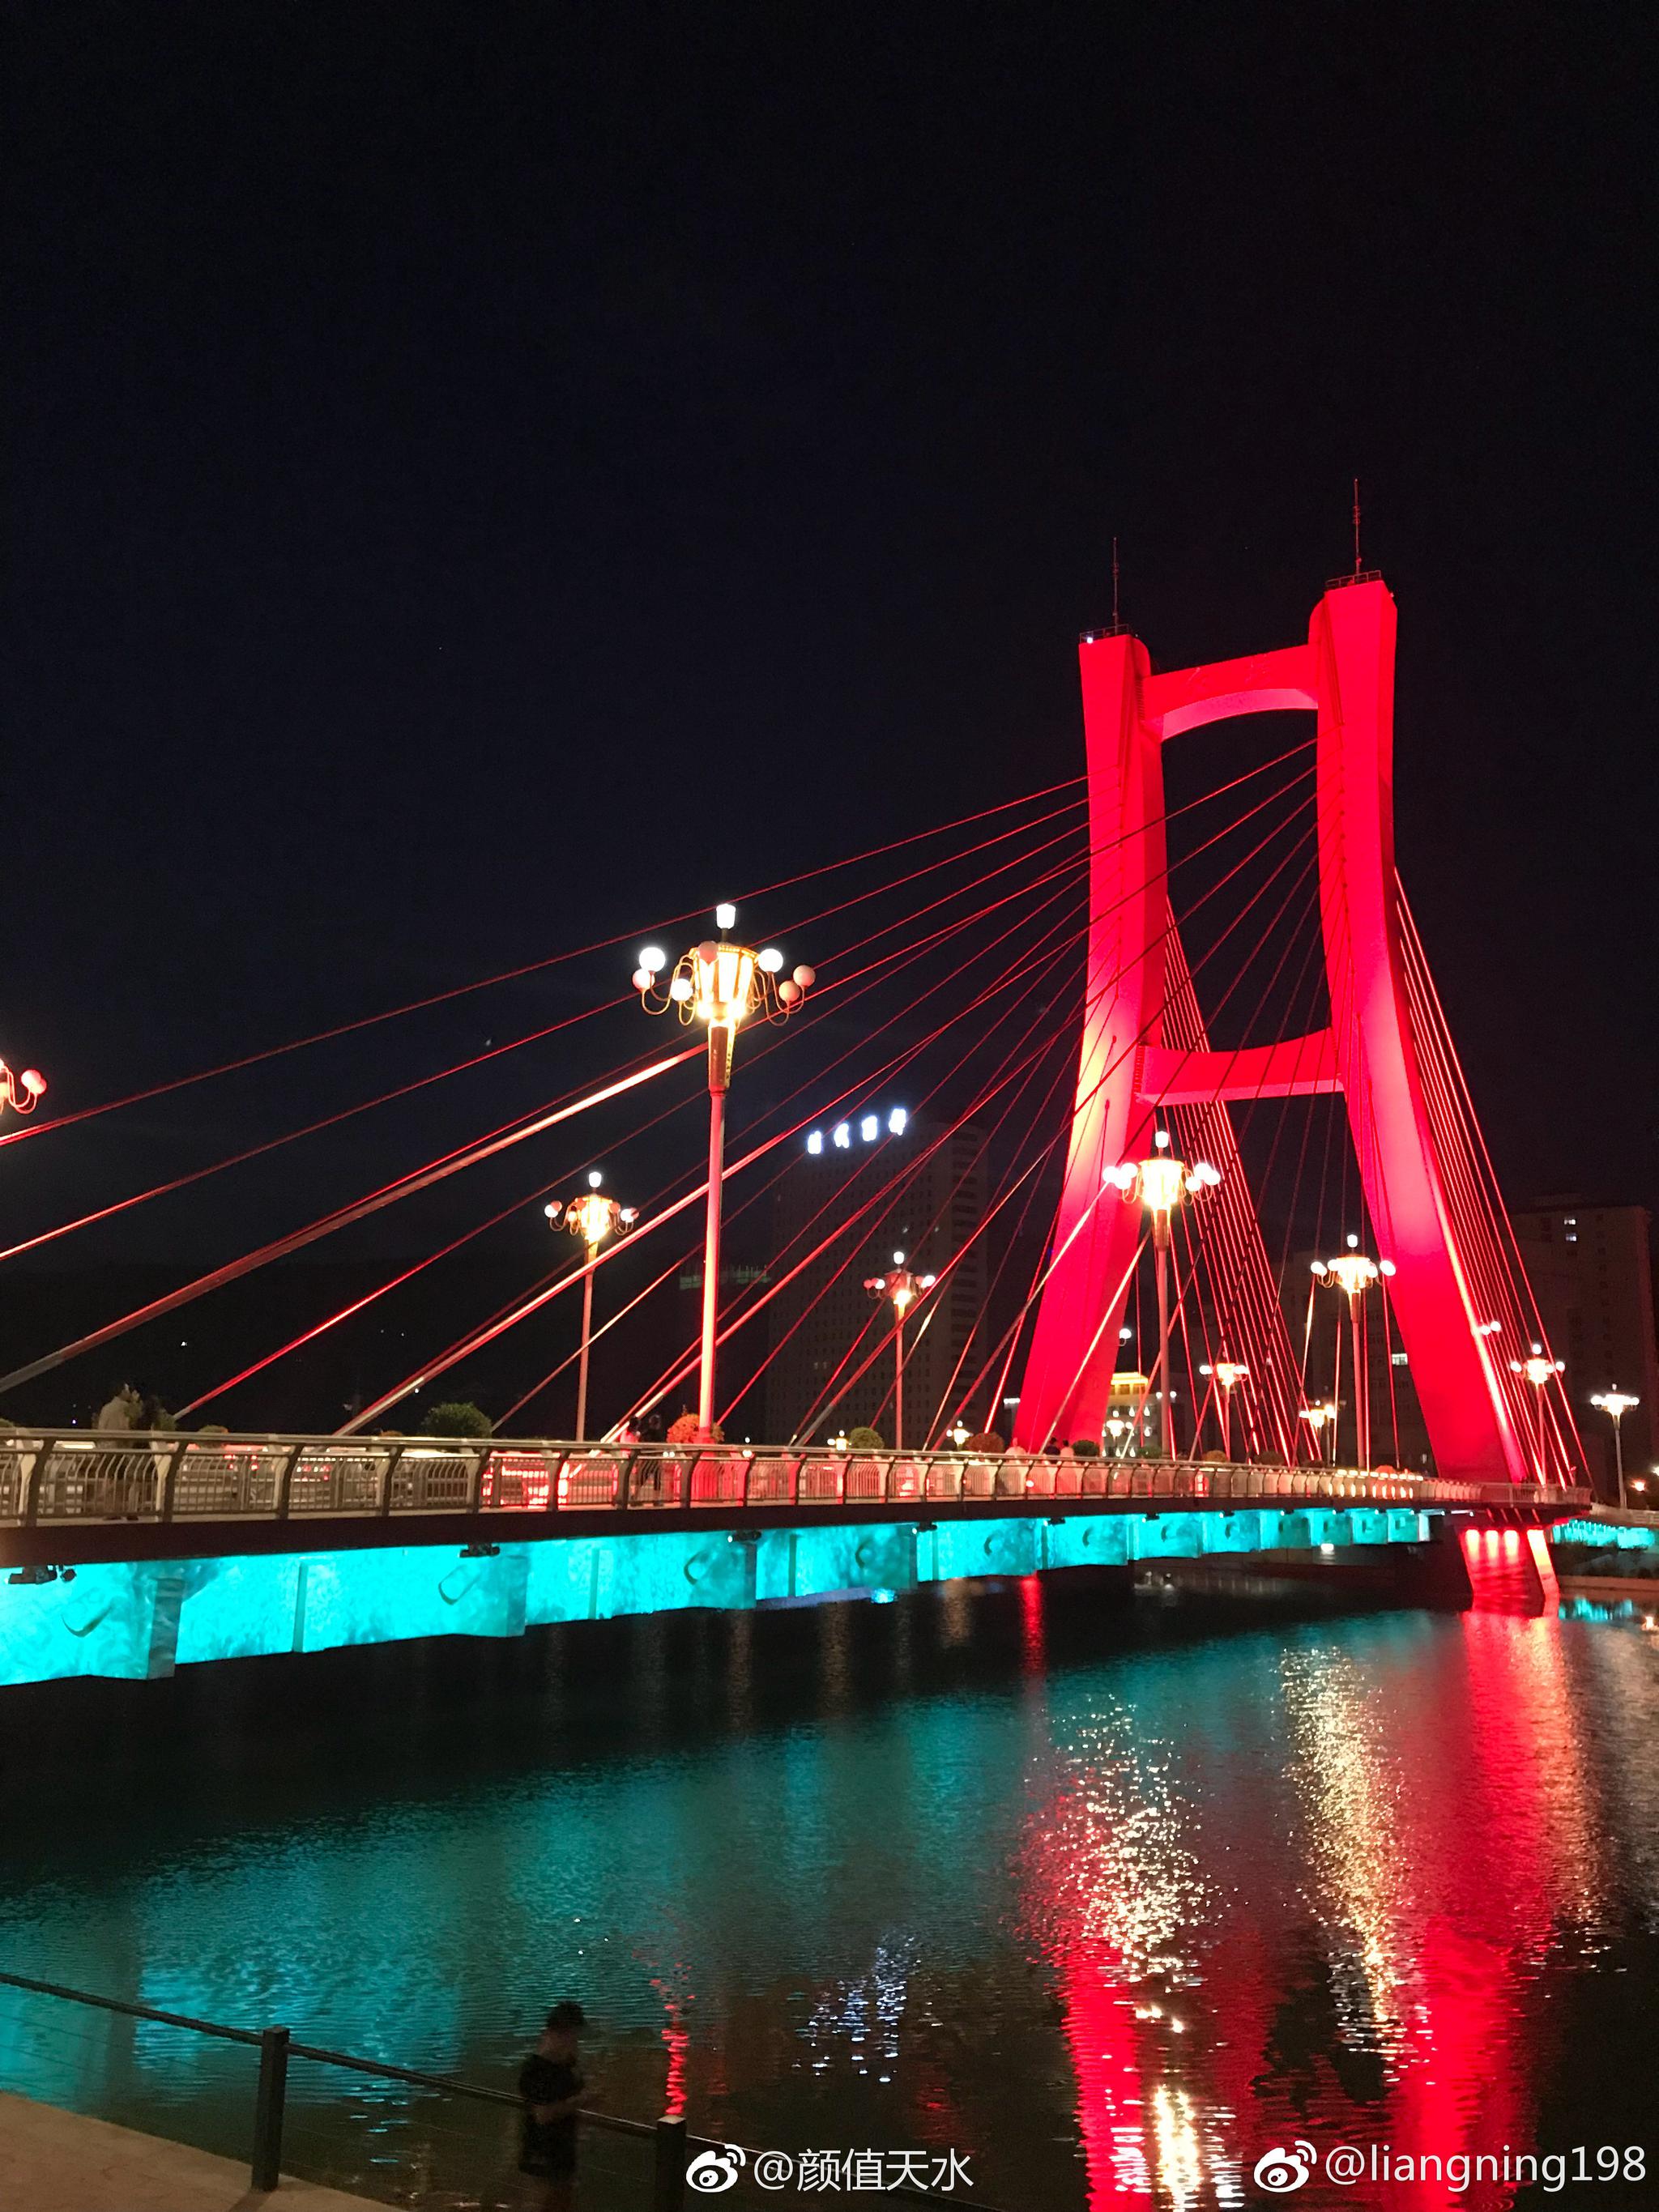 天水红桥夜景,特别美.